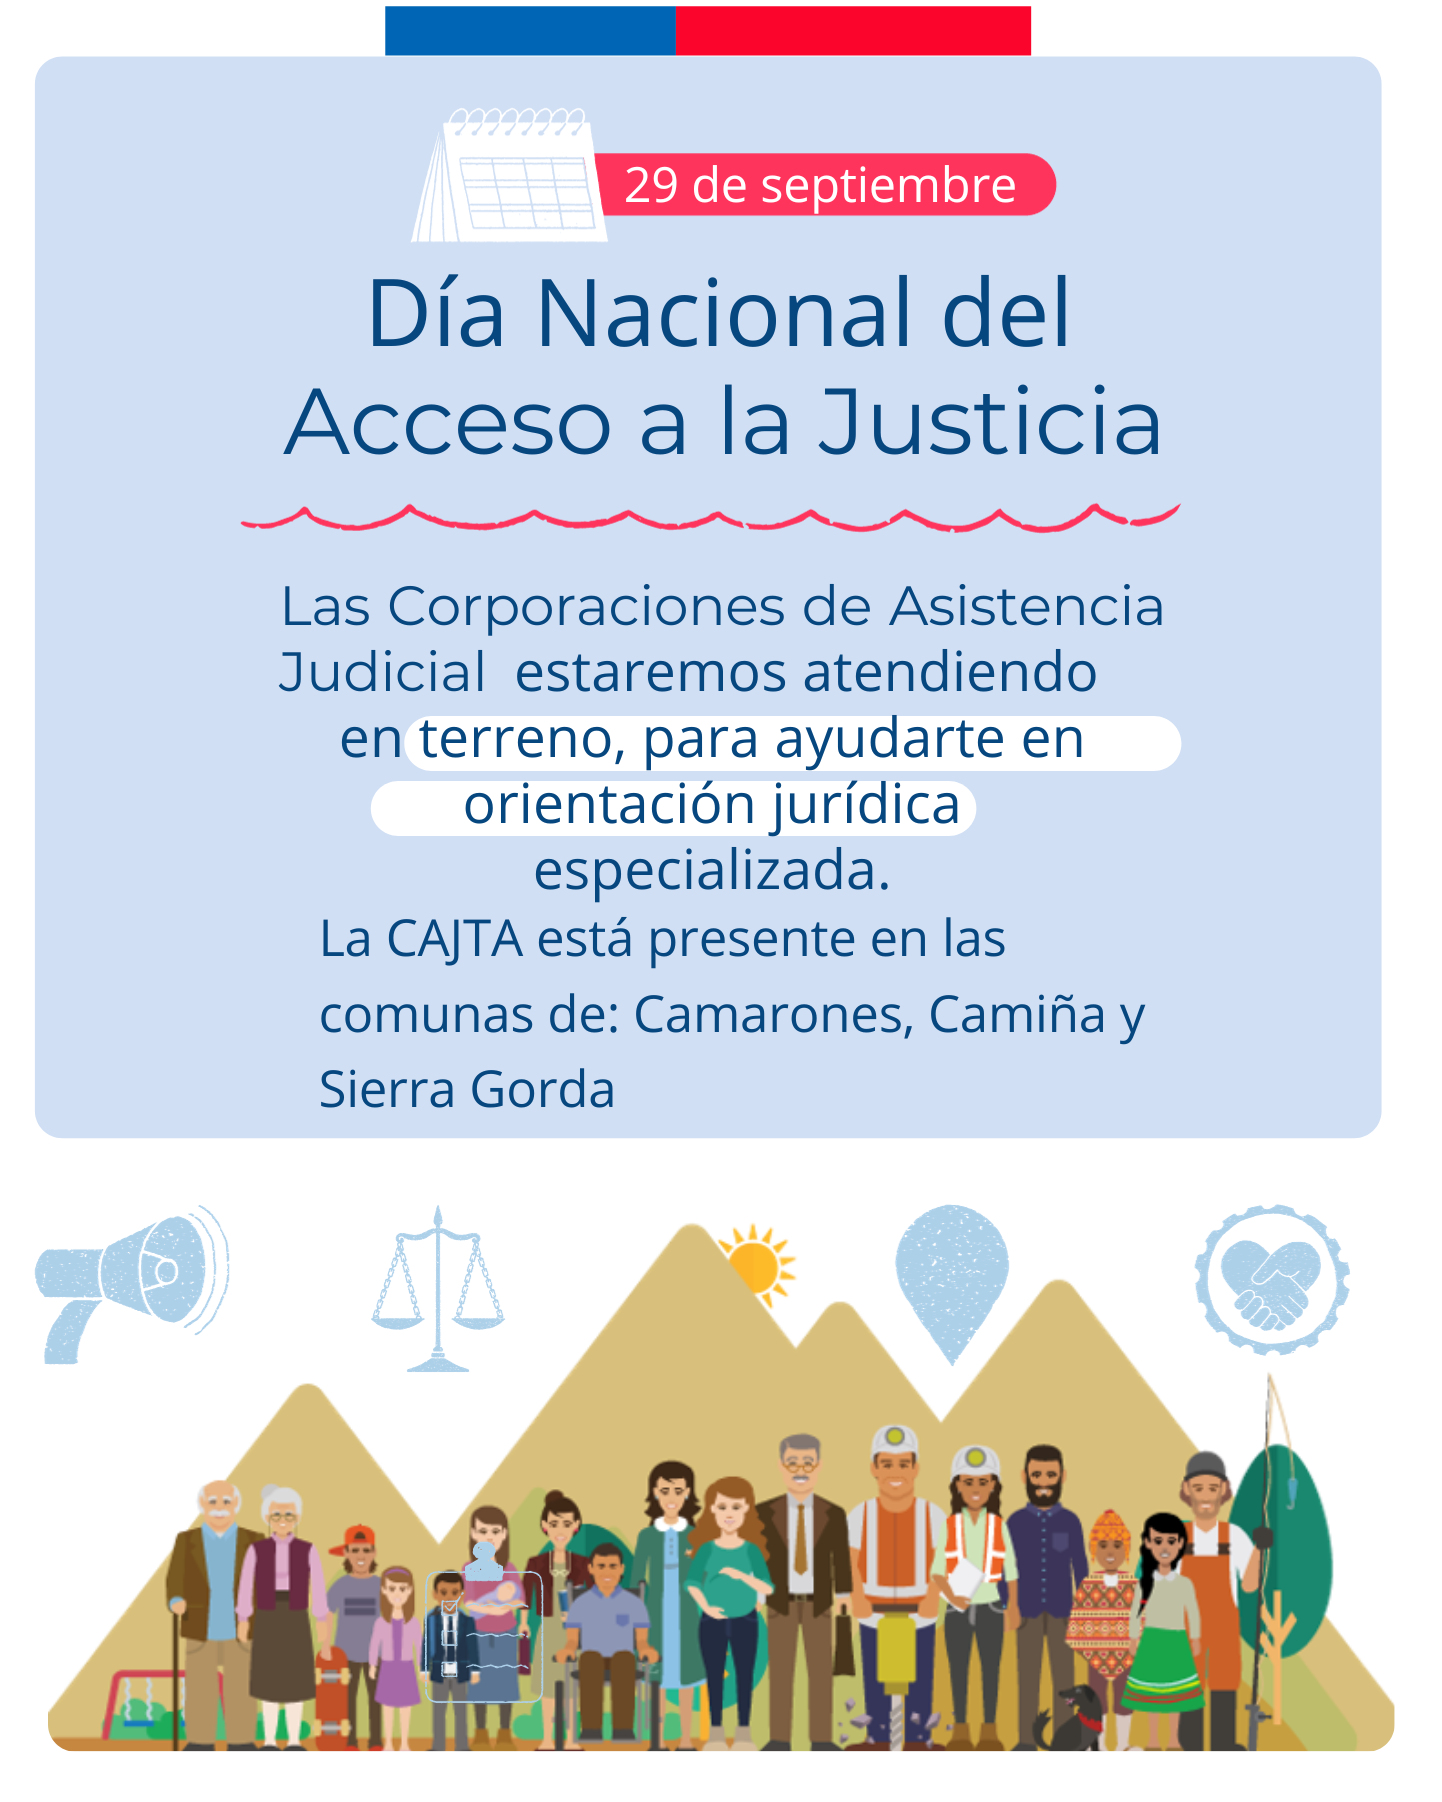 ¡29 de septiembre, Día Nacional de Acceso a la Justicia!